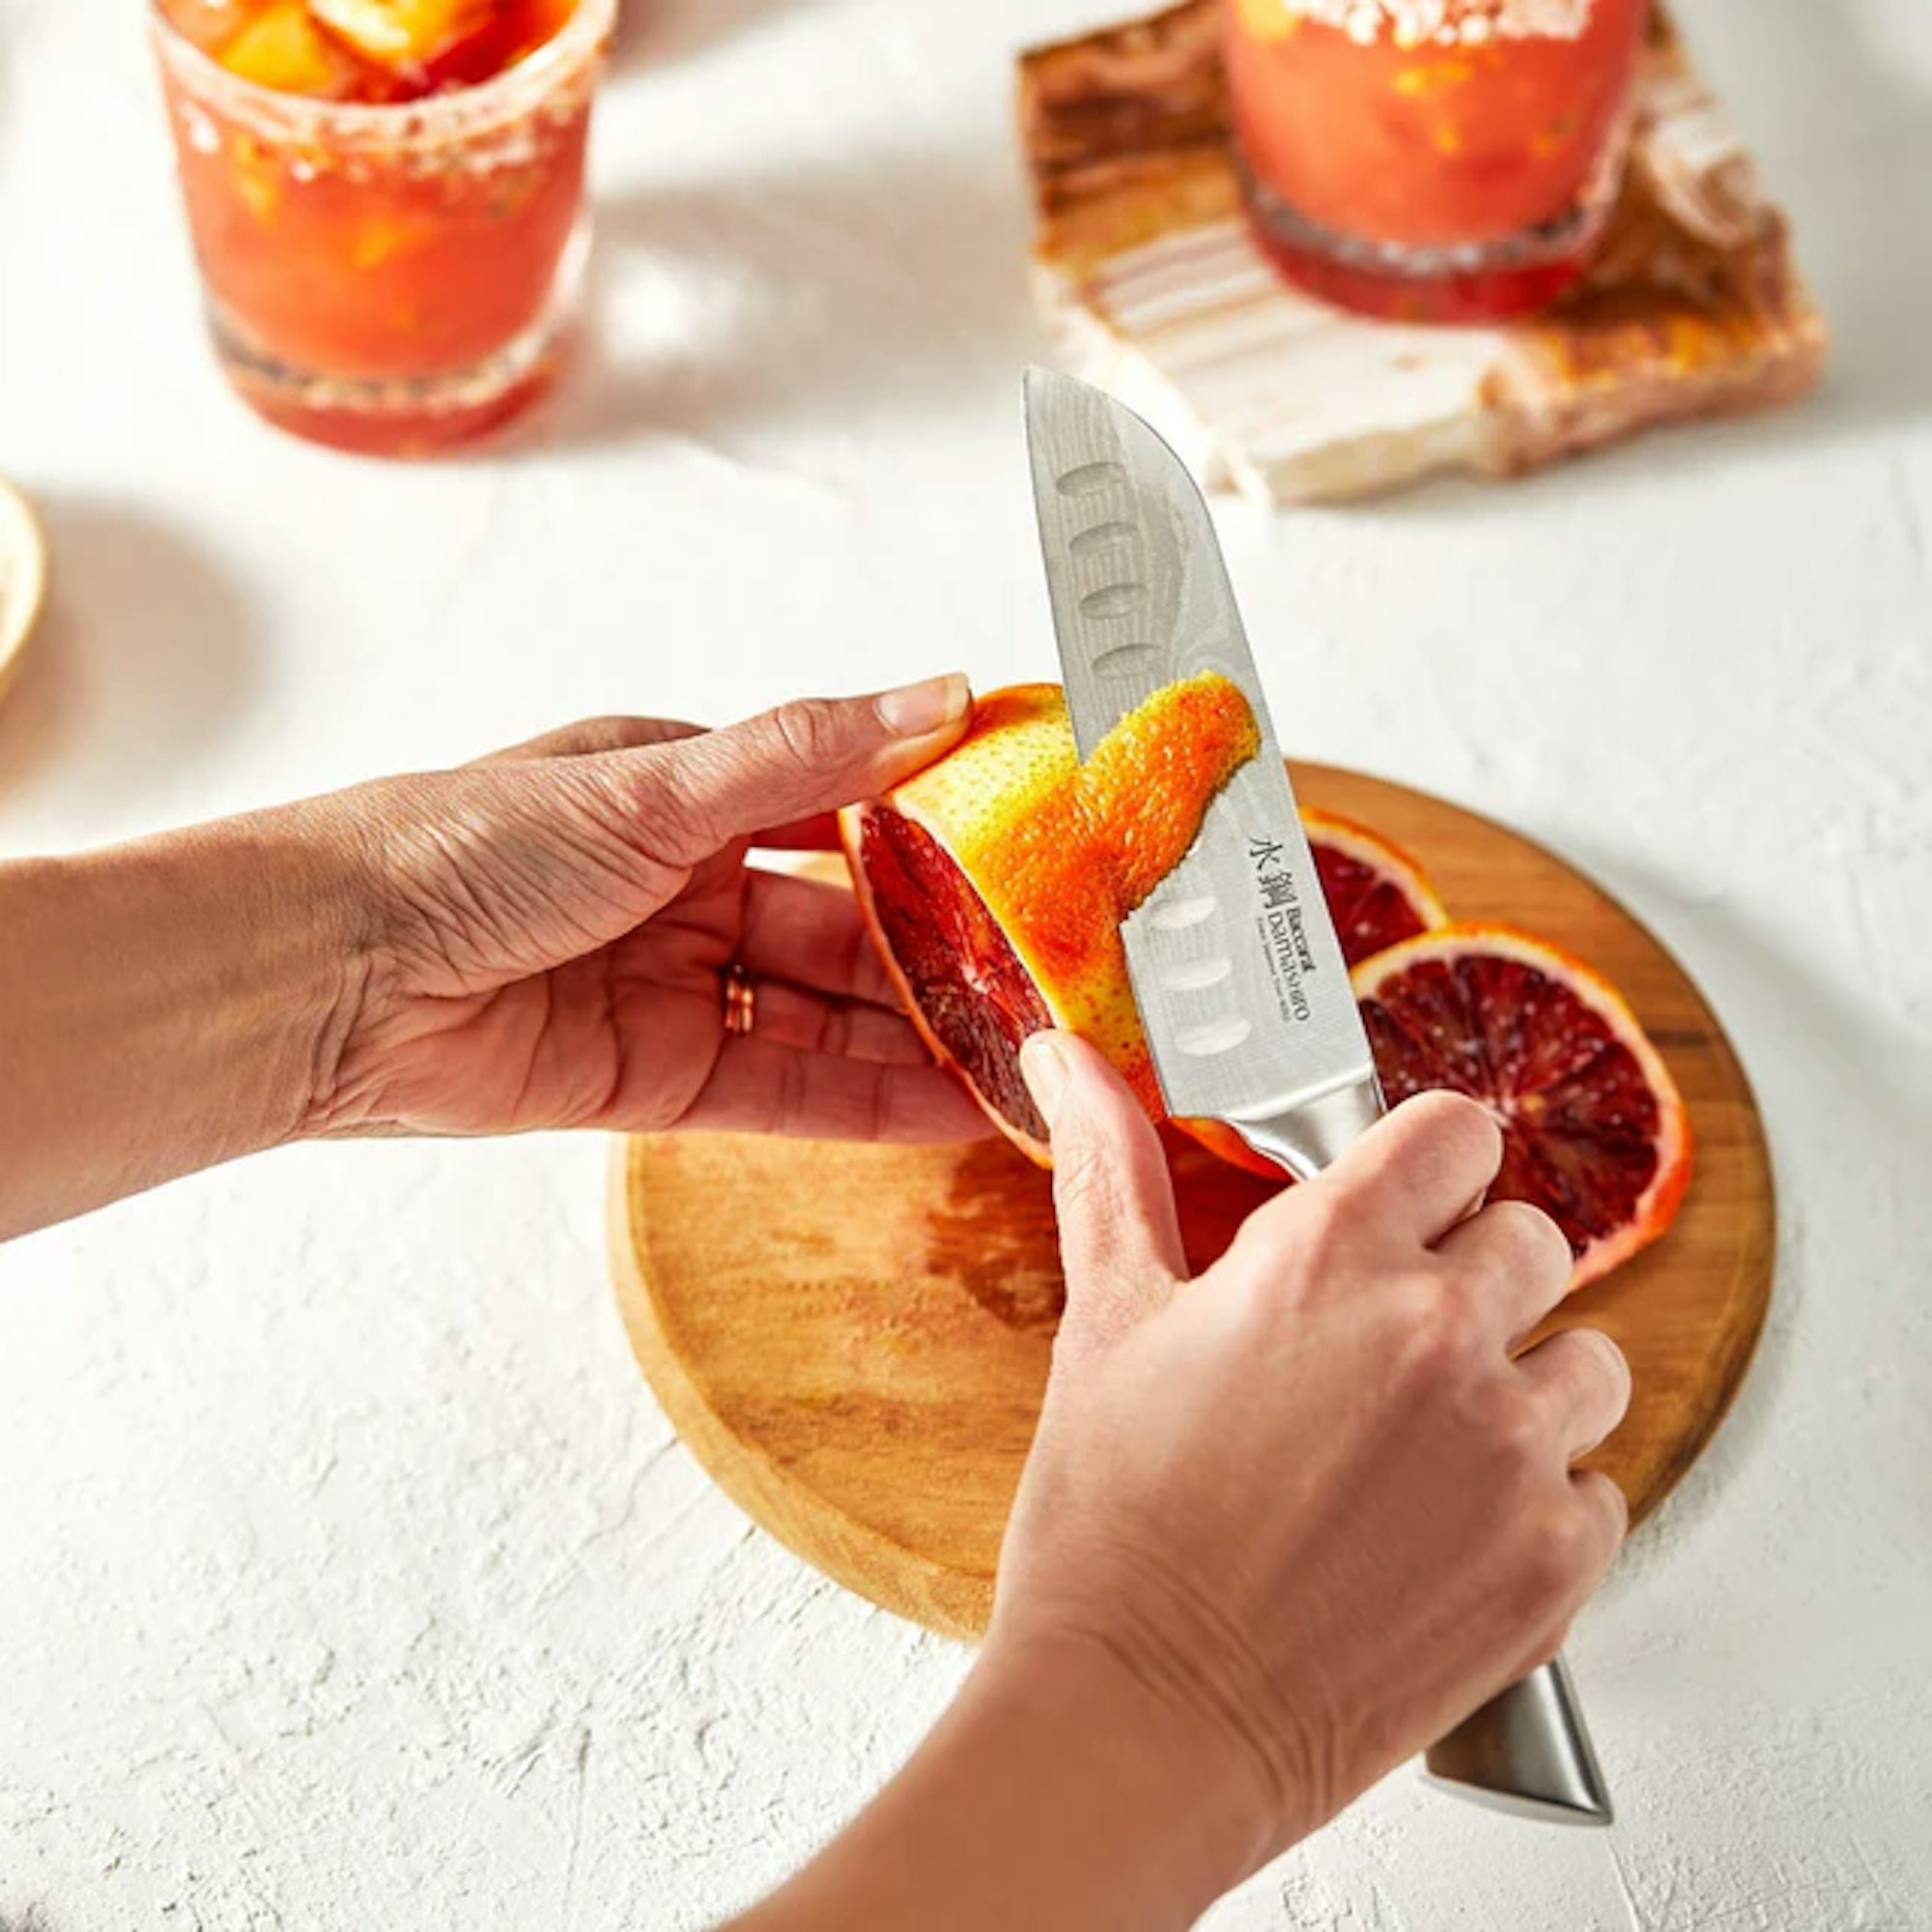 santoku knife being held to cut oranges